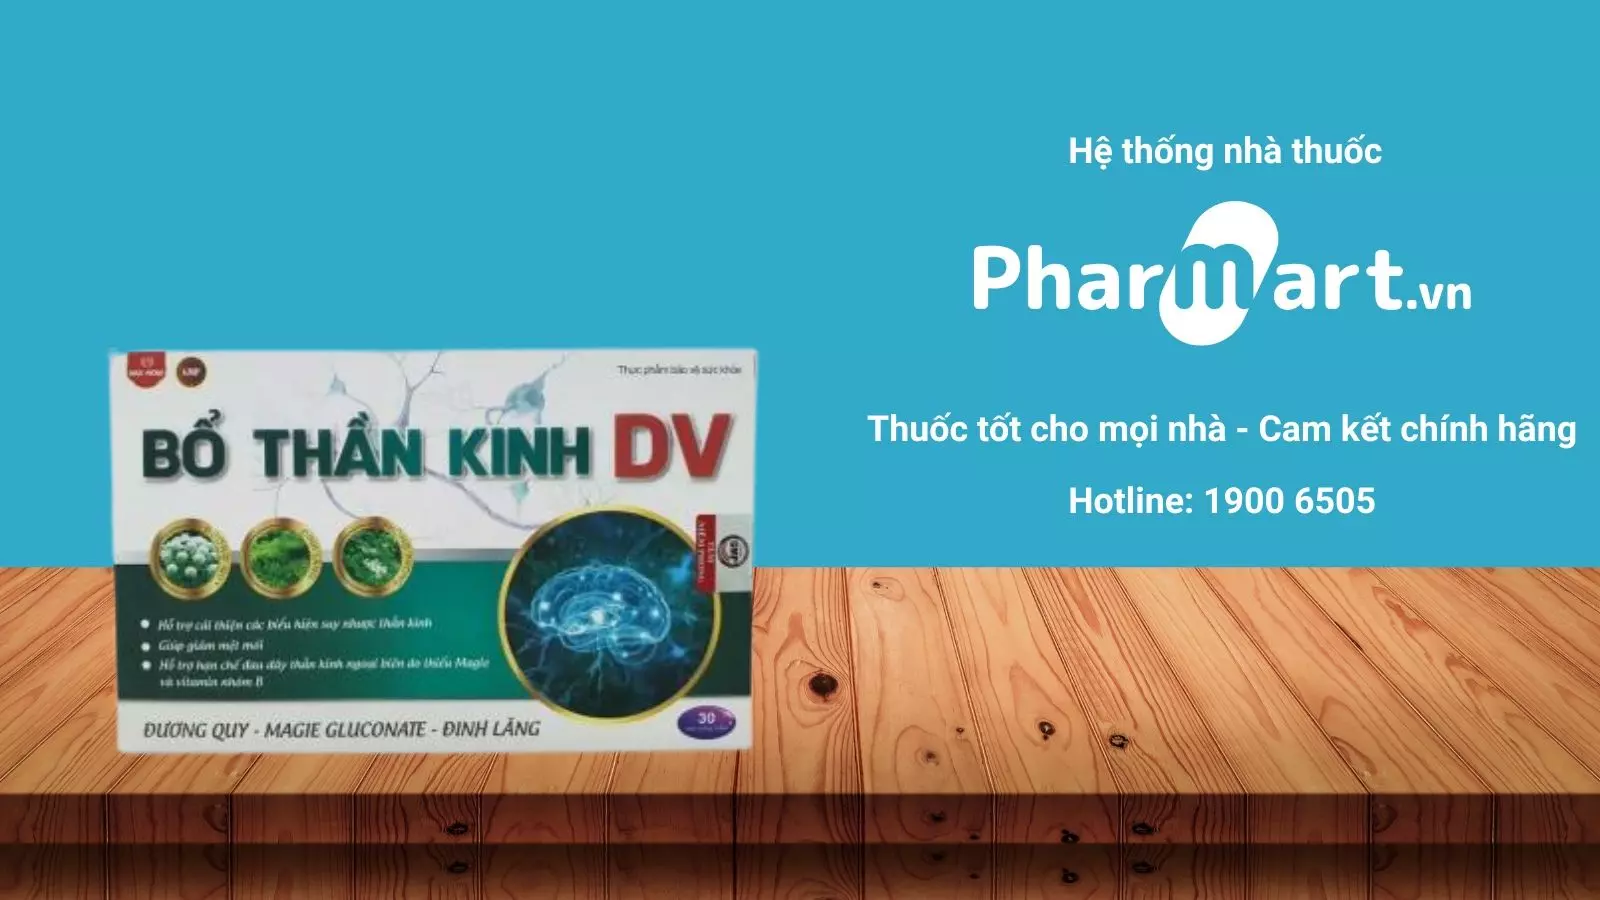 Liên hệ Pharmart.vn để đảm bảo mua hàng chính hãng